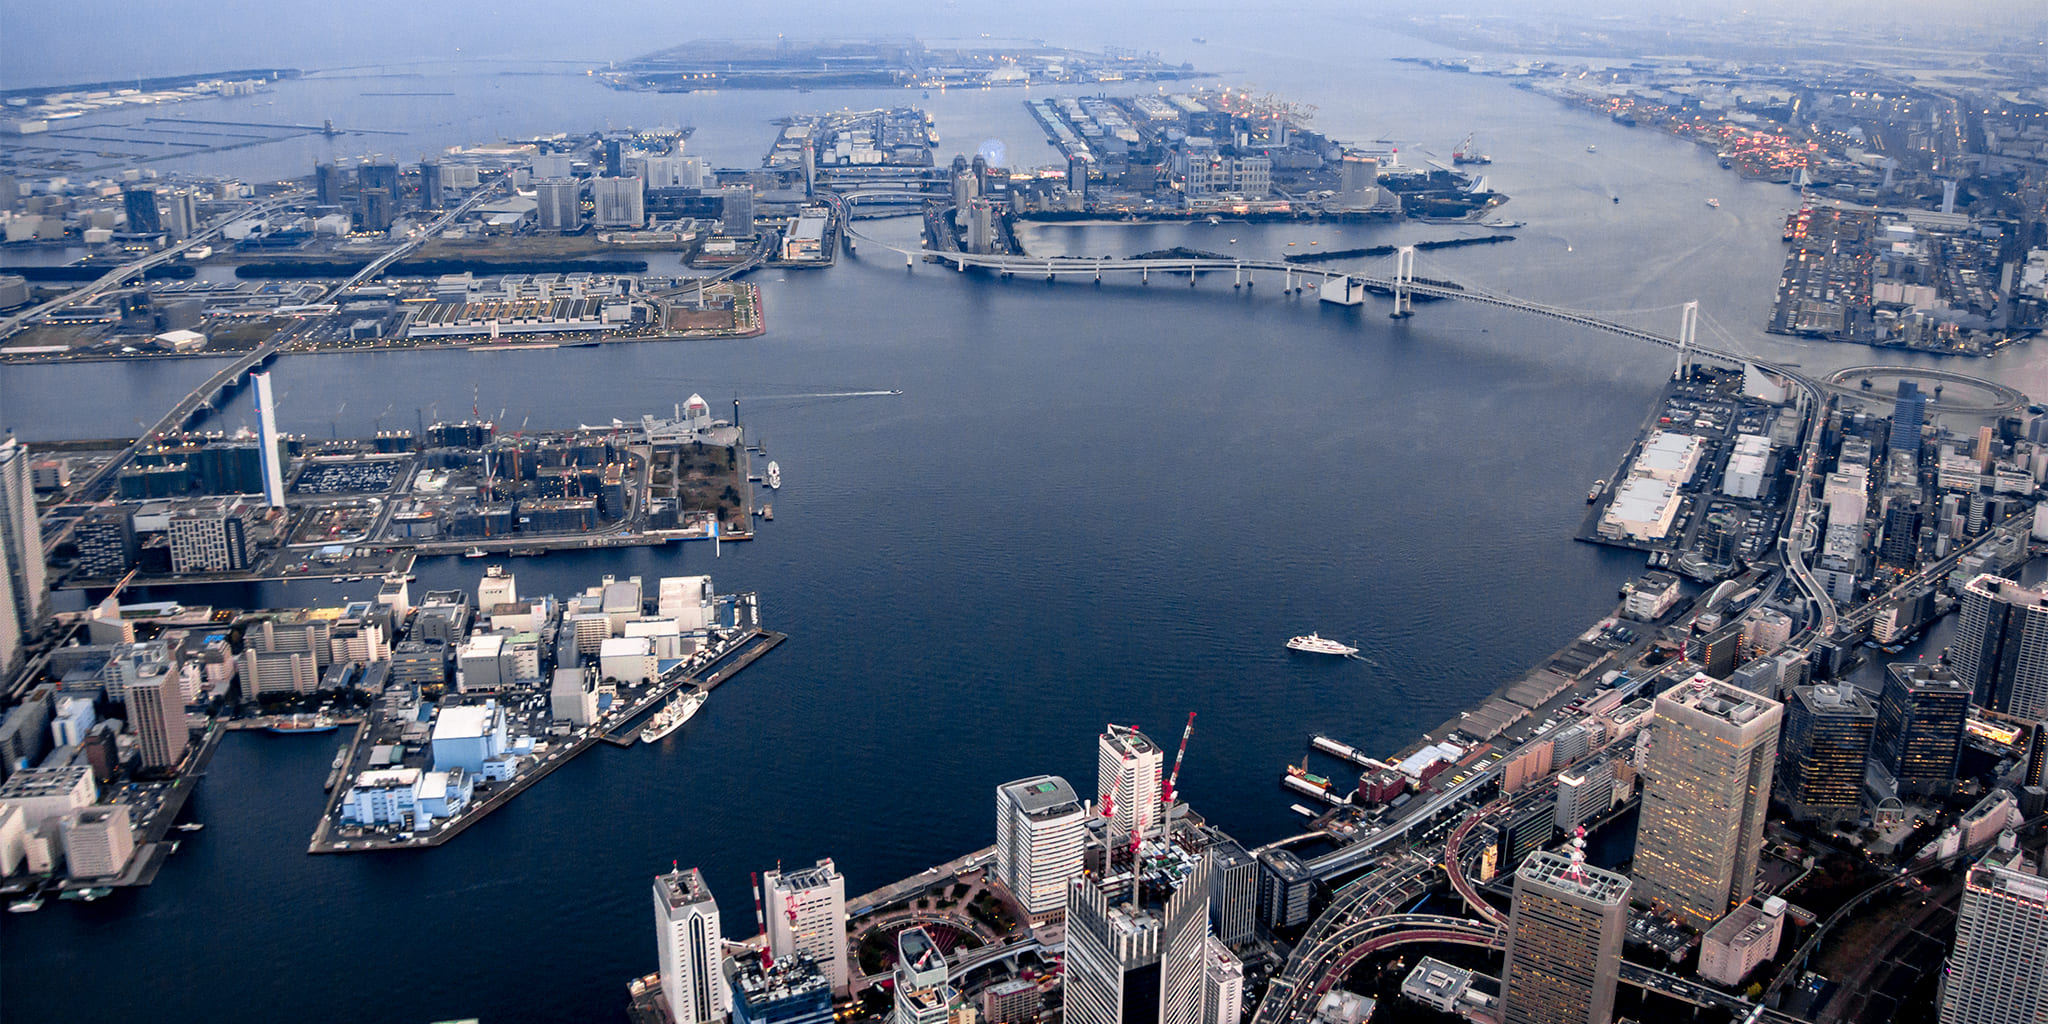 ヘリコプターで東京上空をフライトして見える東京湾